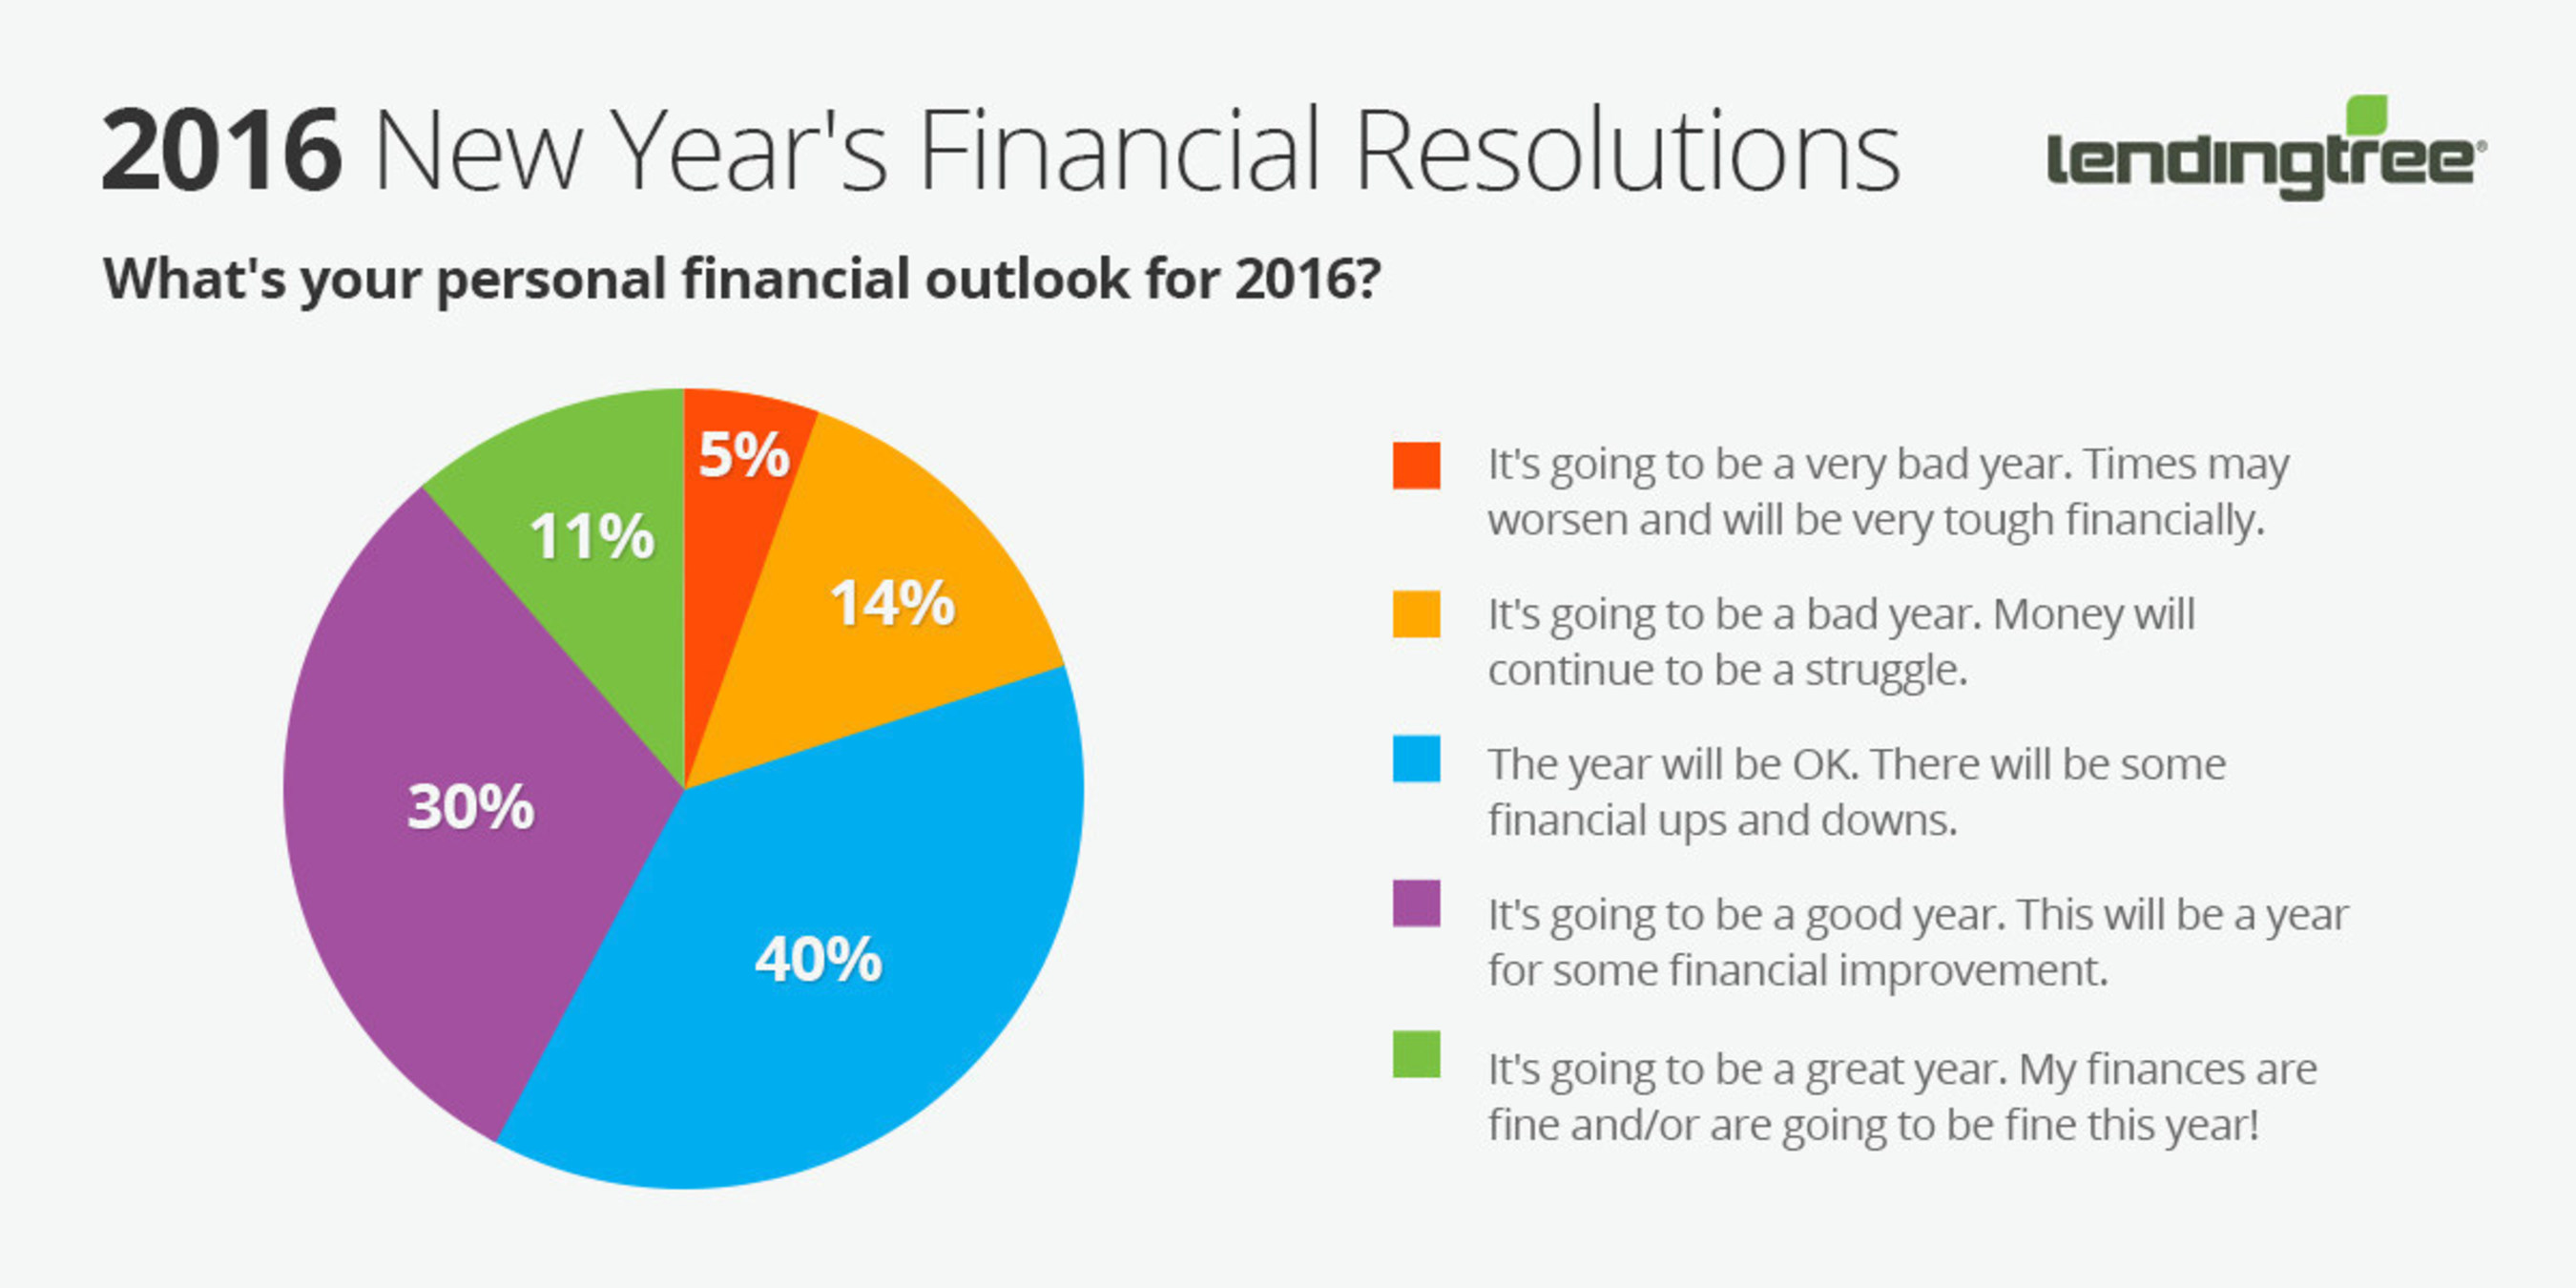 LendingTree: Financial Outlook for 2016